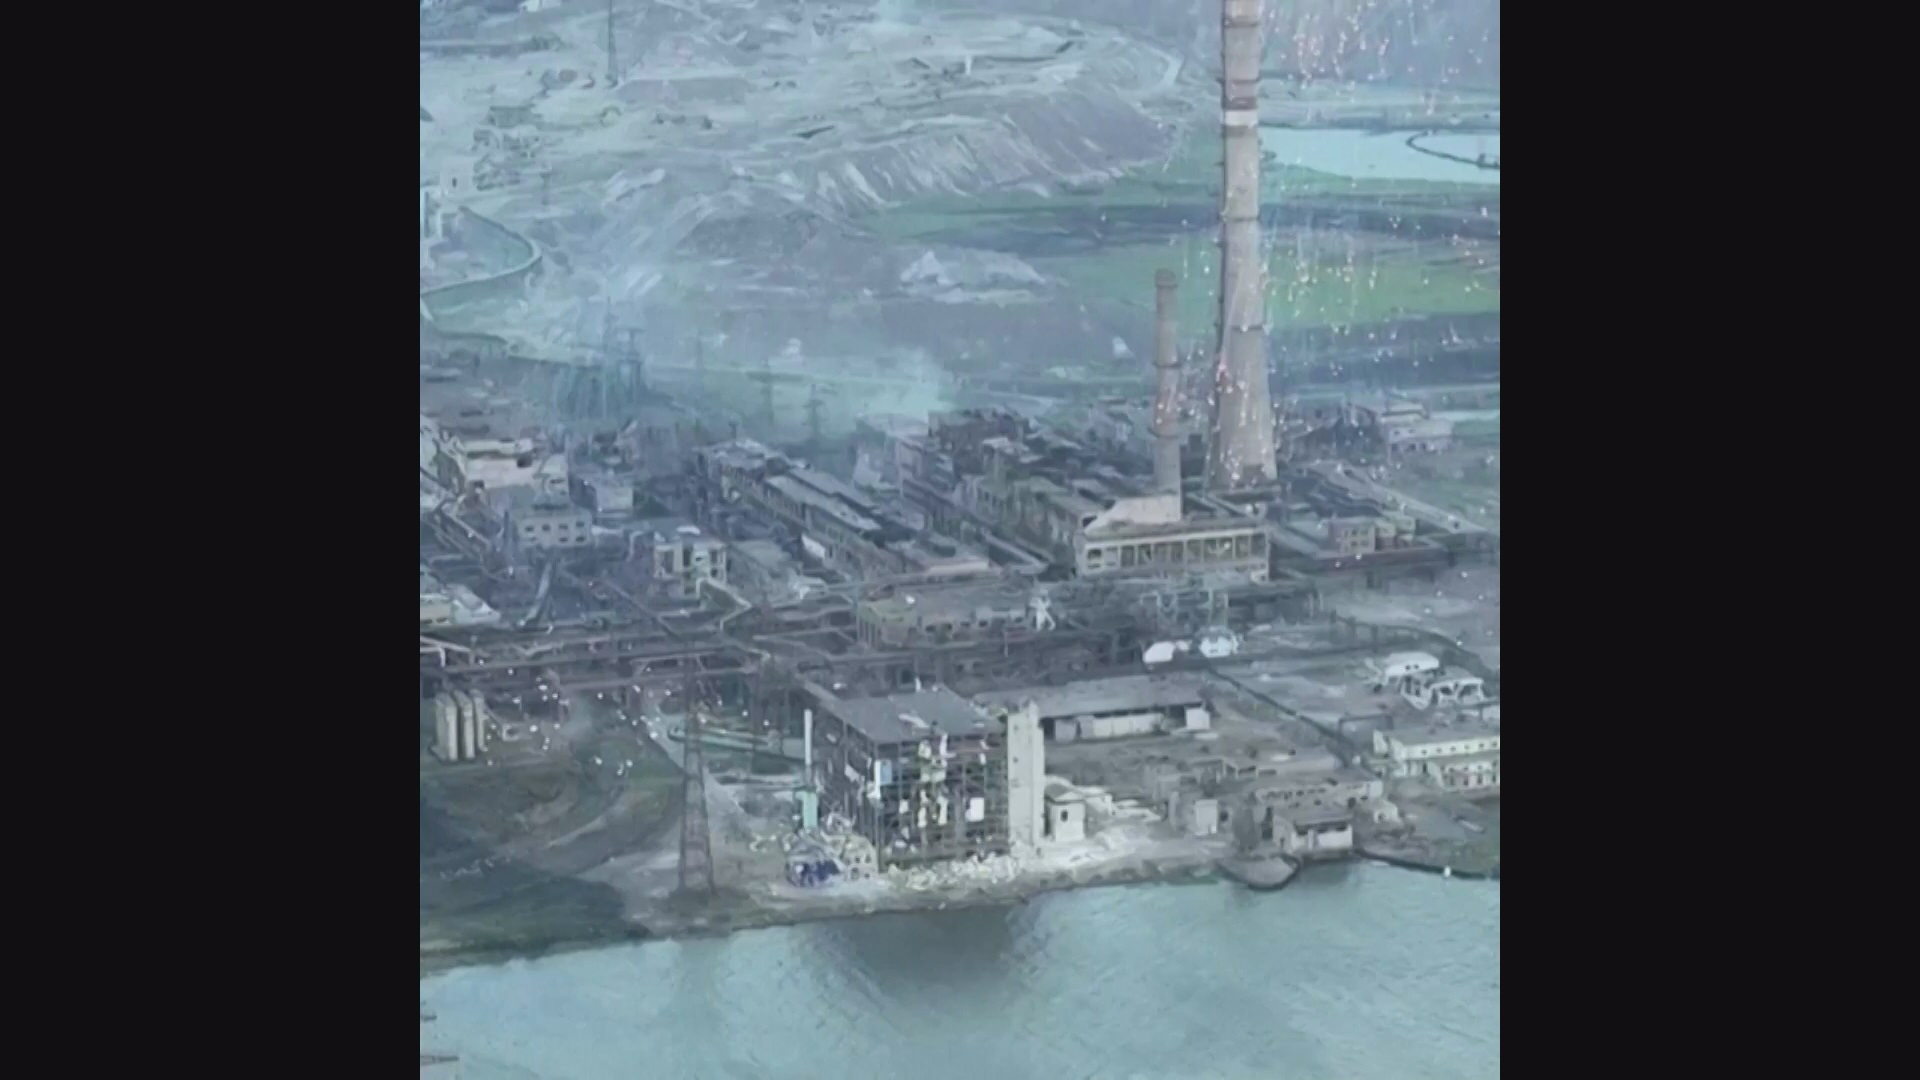 Égő lőszer záporozta az ukrajnai acélgyárat